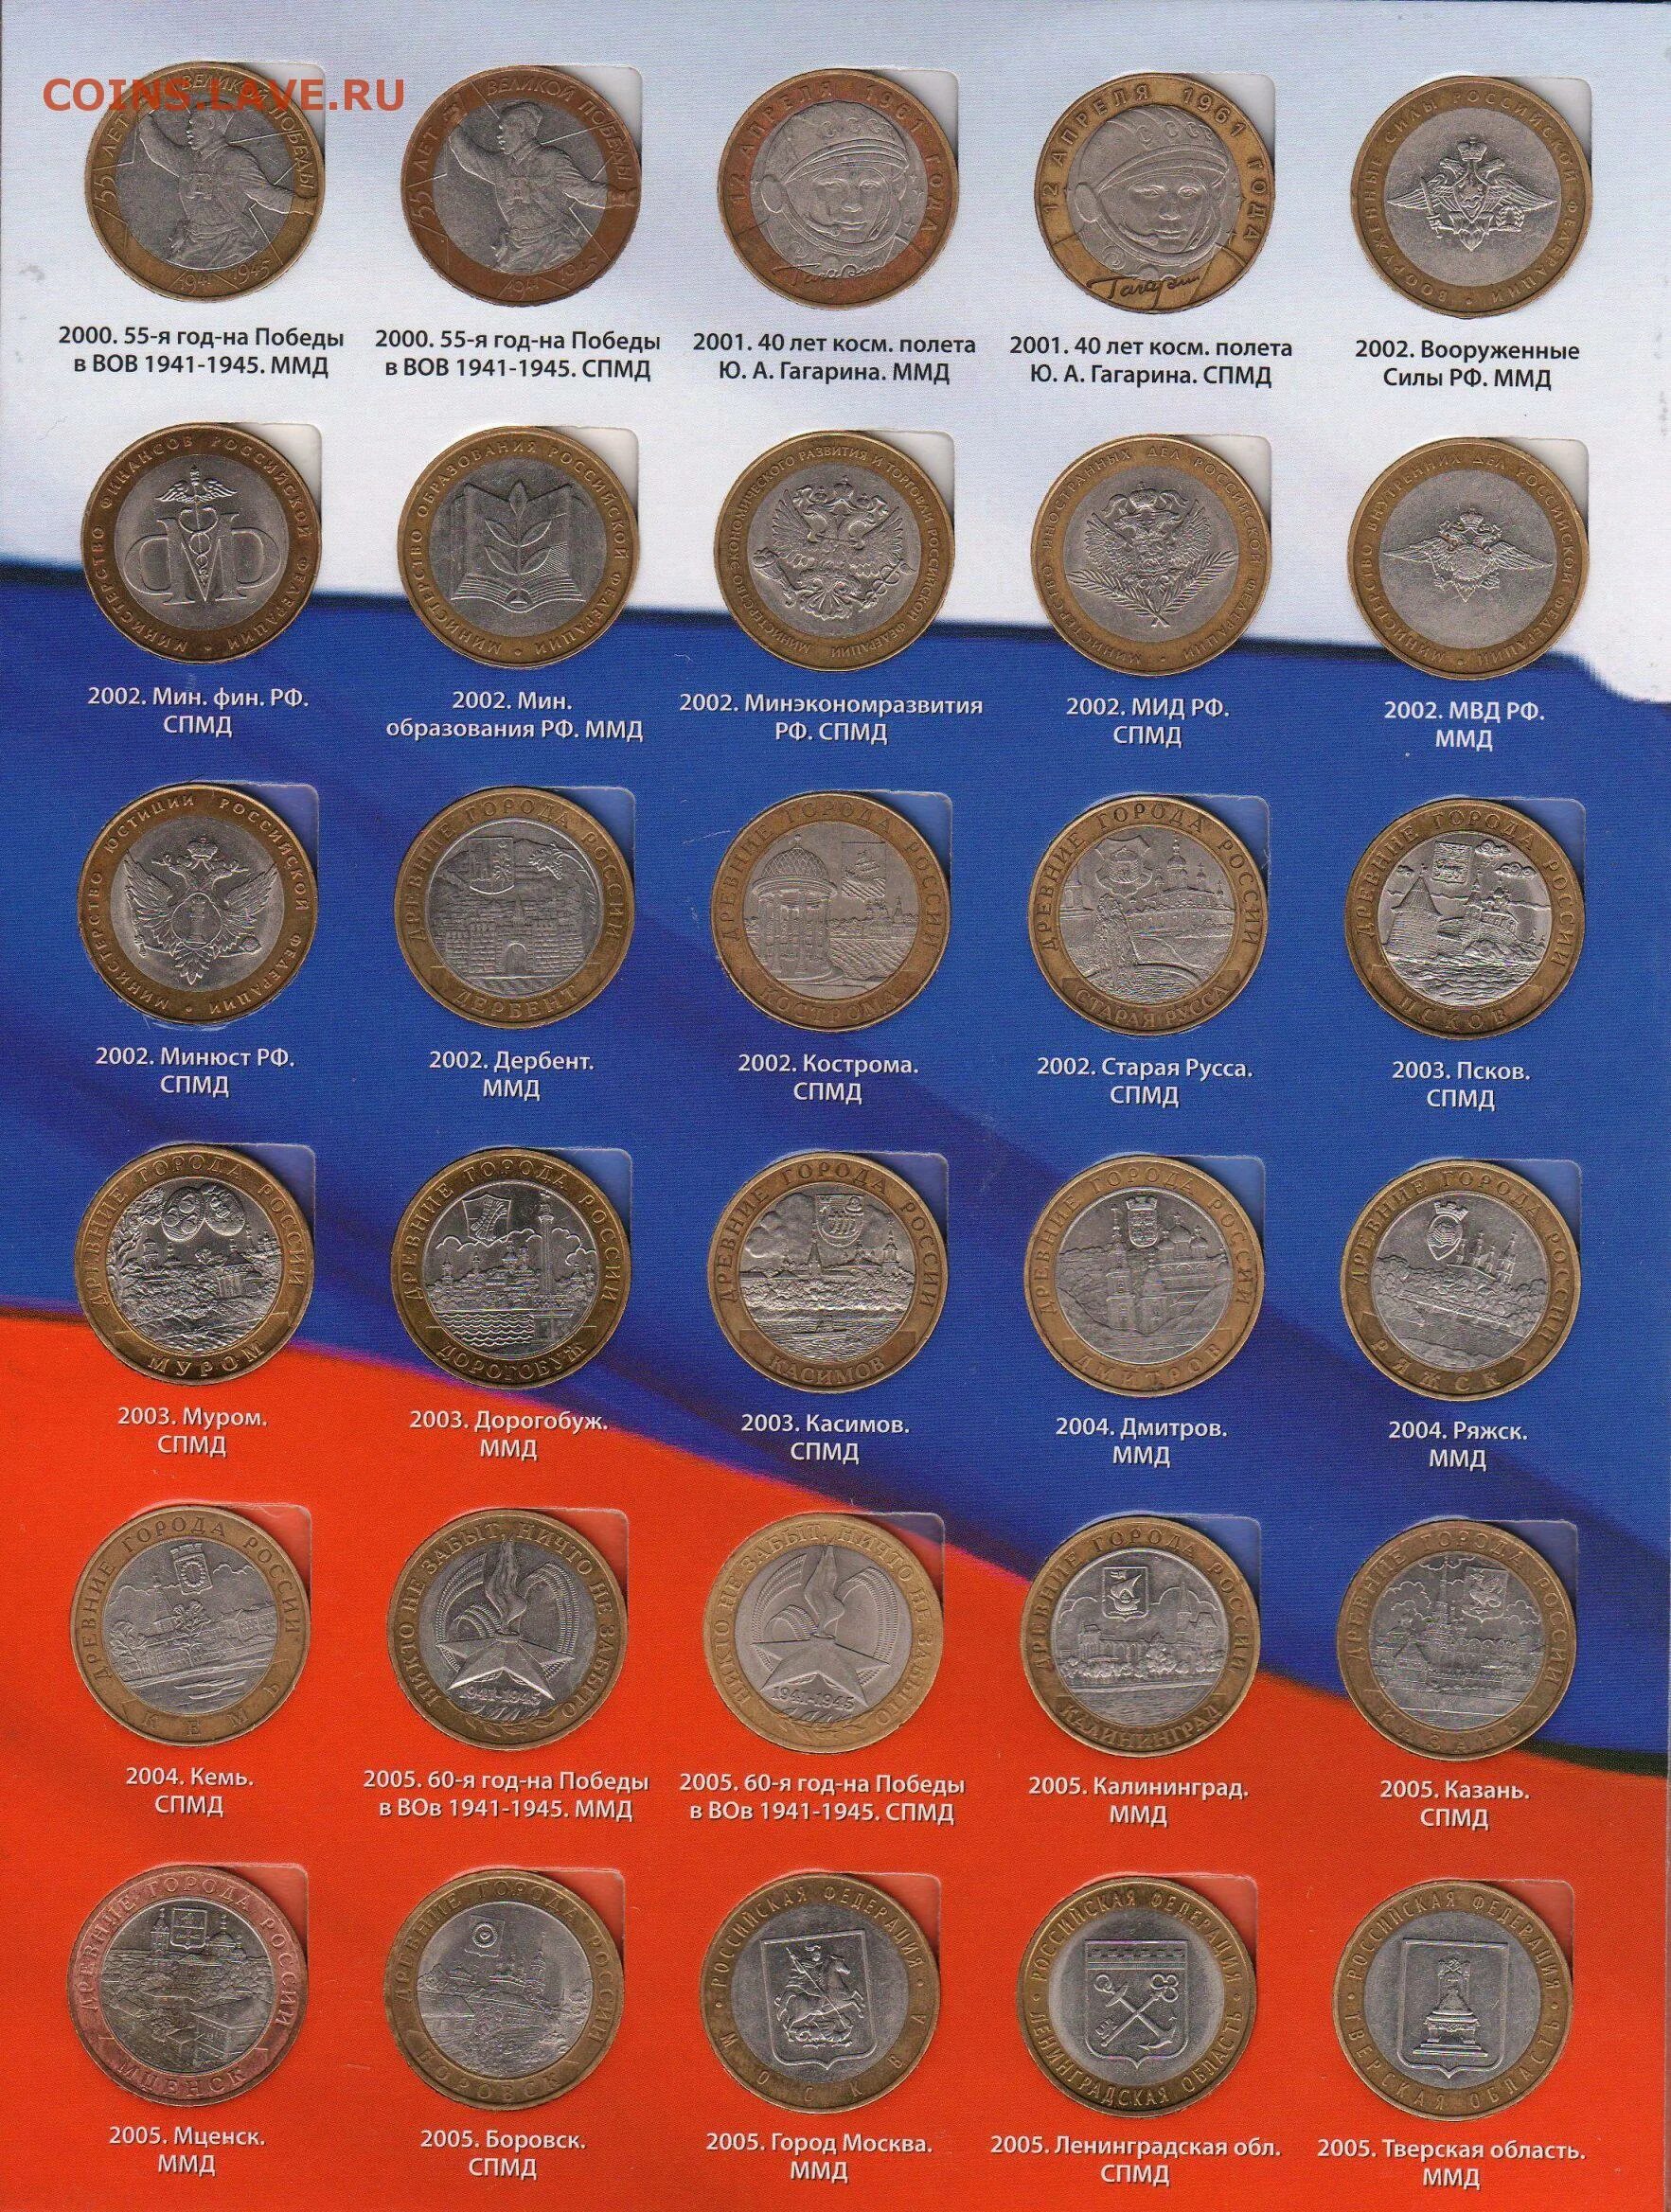 Дорогие 10 рублевые монеты таблица. Юбилейные 10 рублевые монеты. Ценные биметаллические 10 рублевые монеты. Монеты 10 рублевые юбилейные Биметалл альбоме. Каталог россии 10